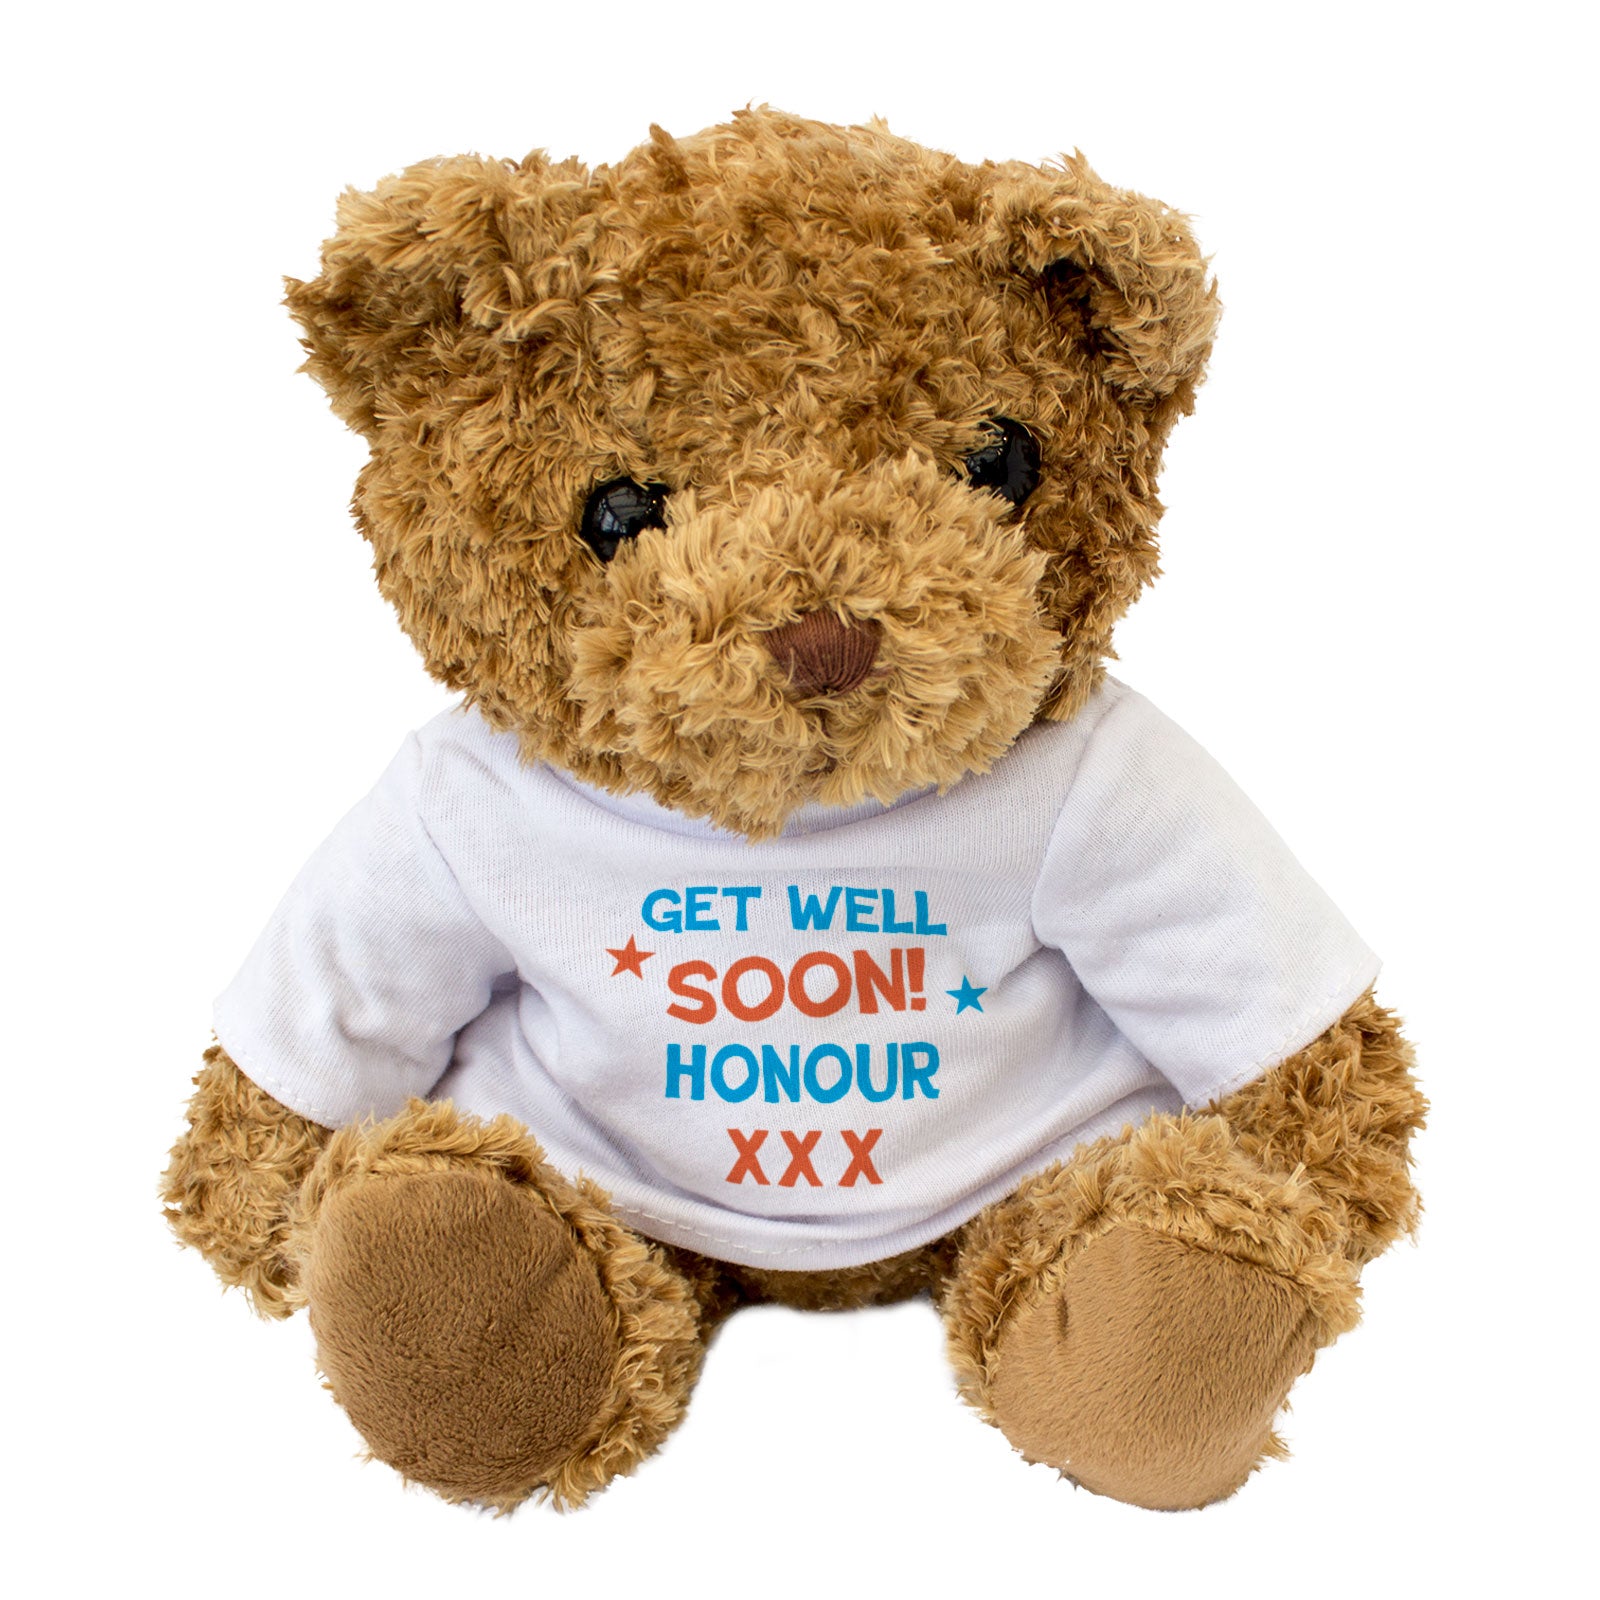 Get Well Soon Honour - Teddy Bear